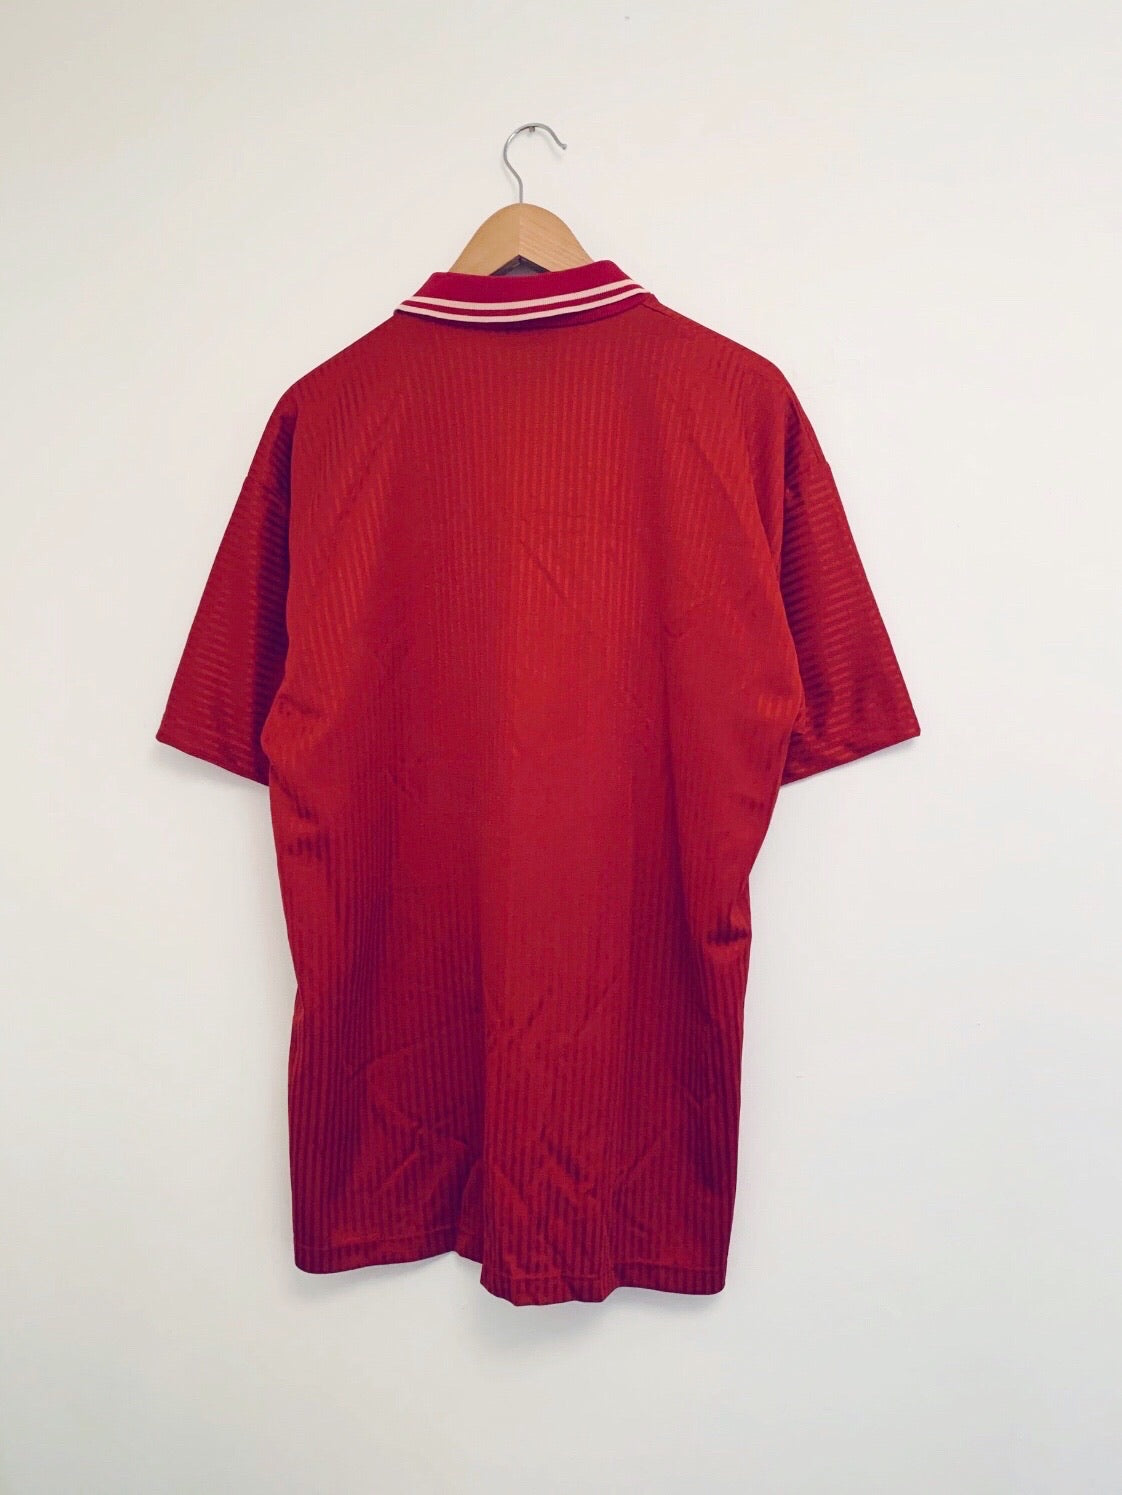 1990/91 Cittadella Home Shirt (L) 9/10